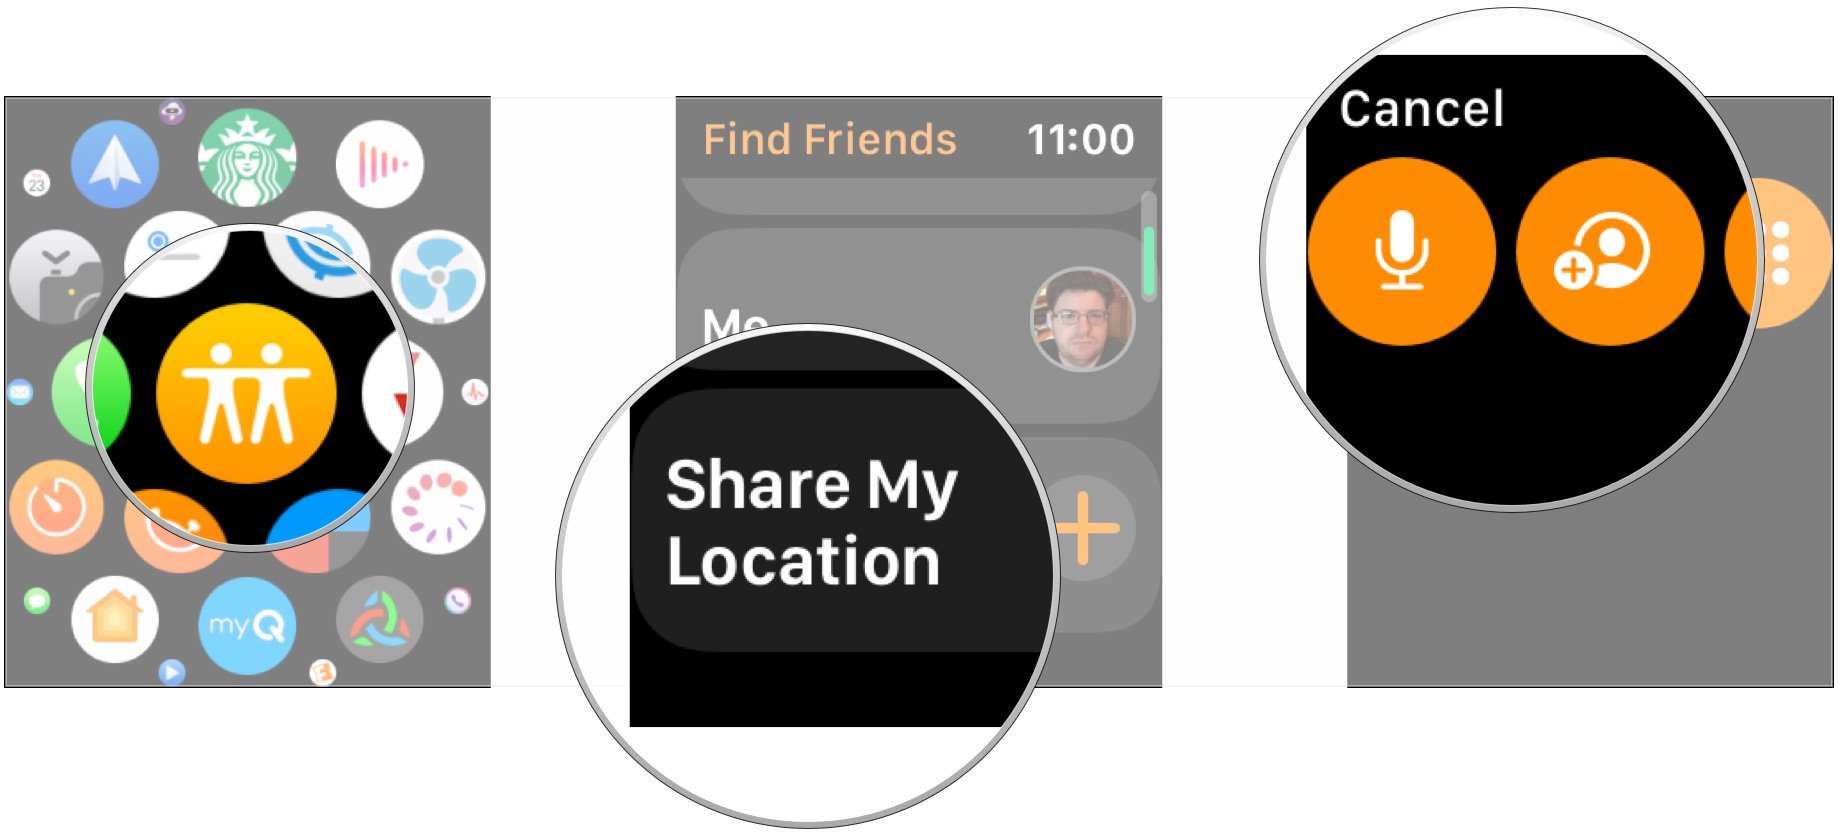 Откройте «Найти друзей», нажмите «Поделиться моим местоположением», добавьте контакт.